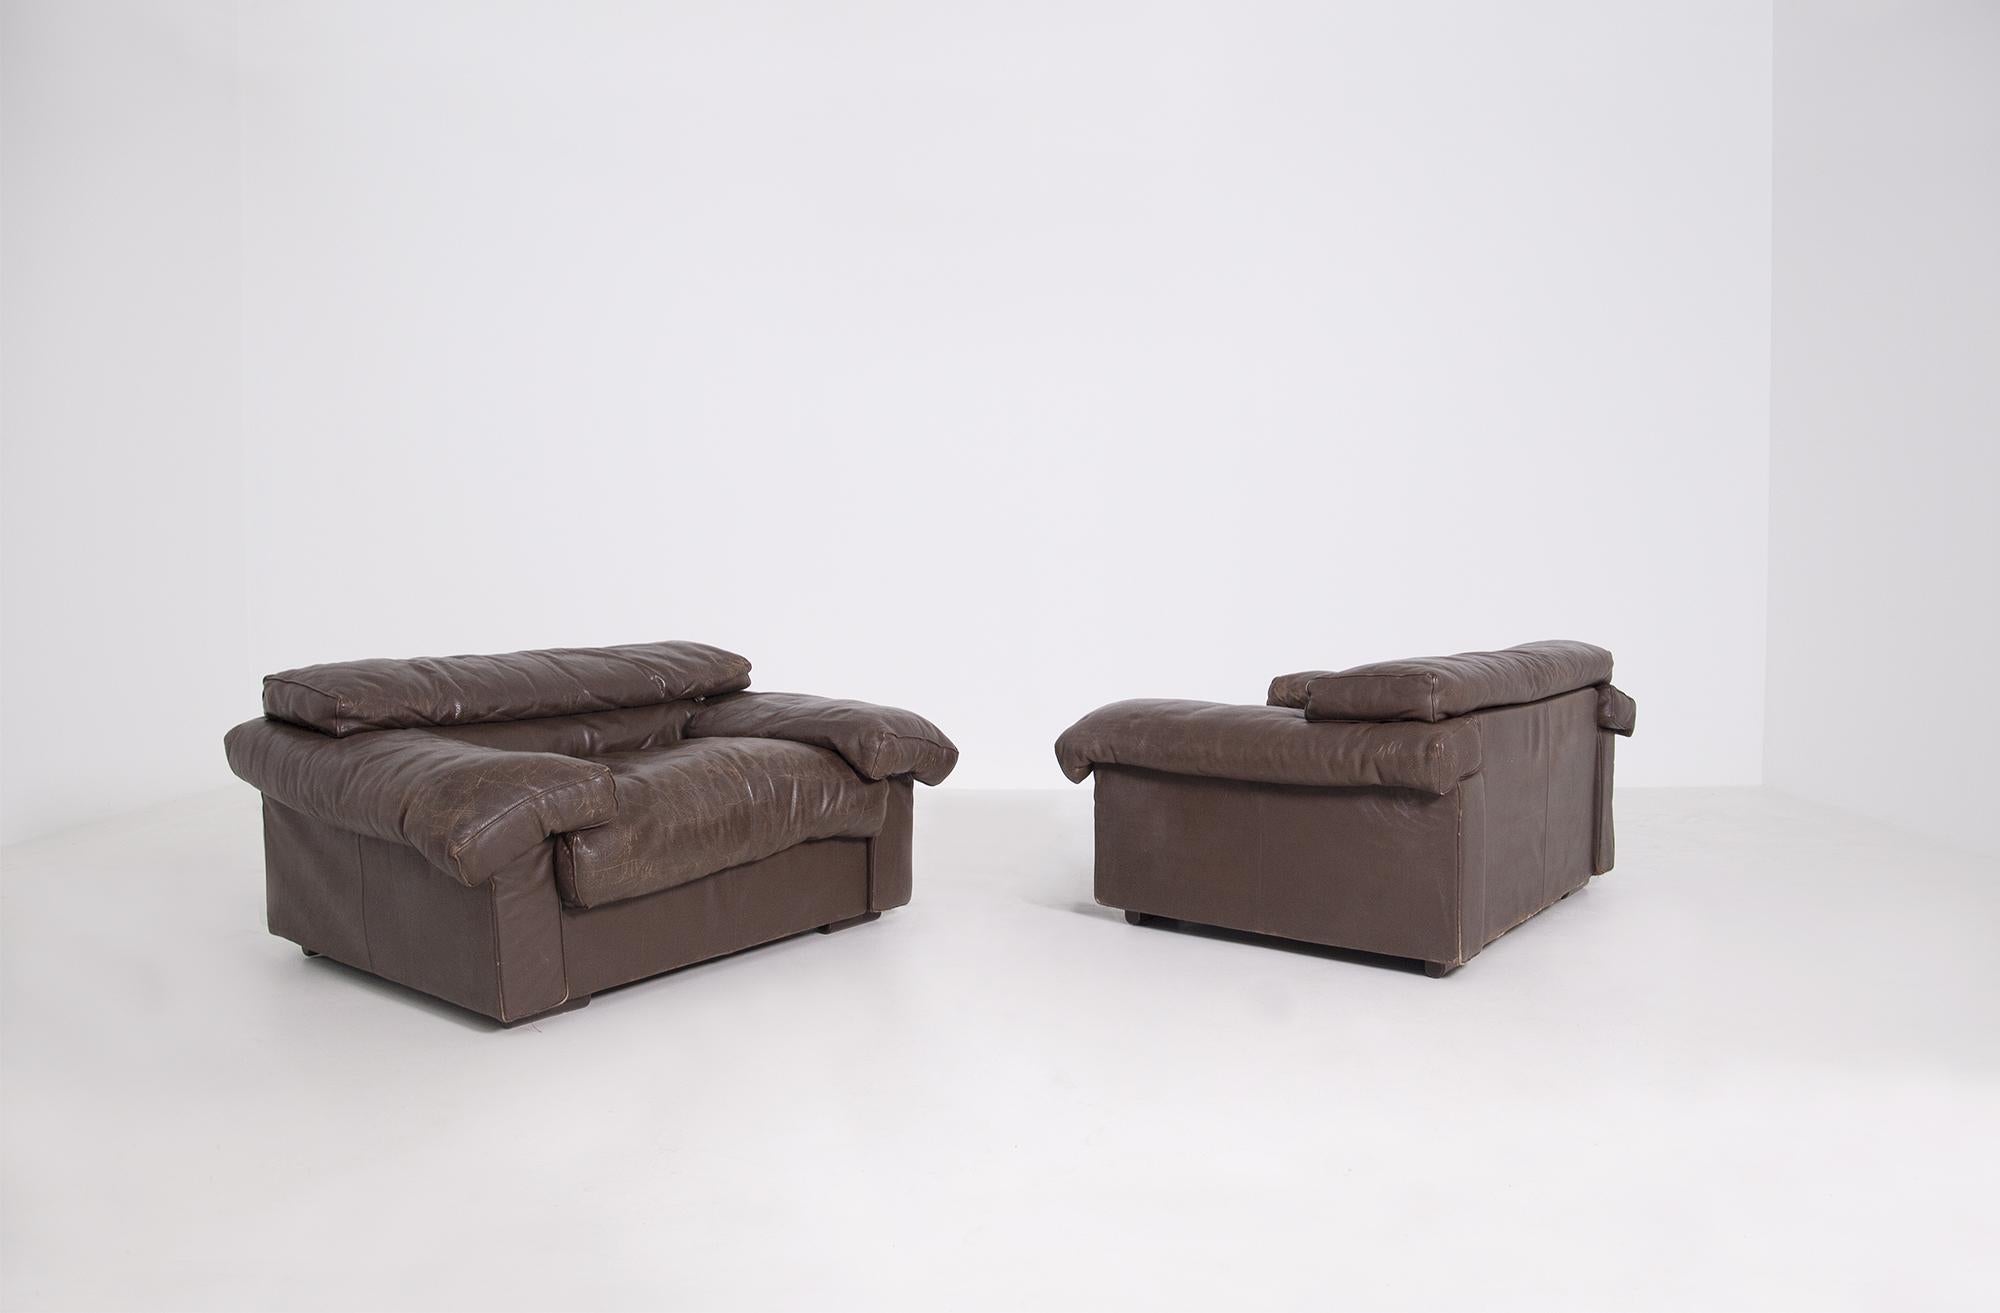 Elegantes und modernes Paar großer Sessel, entworfen von Tobia Scarpa für die Manufaktur B&B Italia im Jahr 1973. Das Sesselpaar ist mit einem schönen braunen Leder bezogen. Die Sessel sind das Modell Erasmo mit dem Originaletikett der Manufaktur.